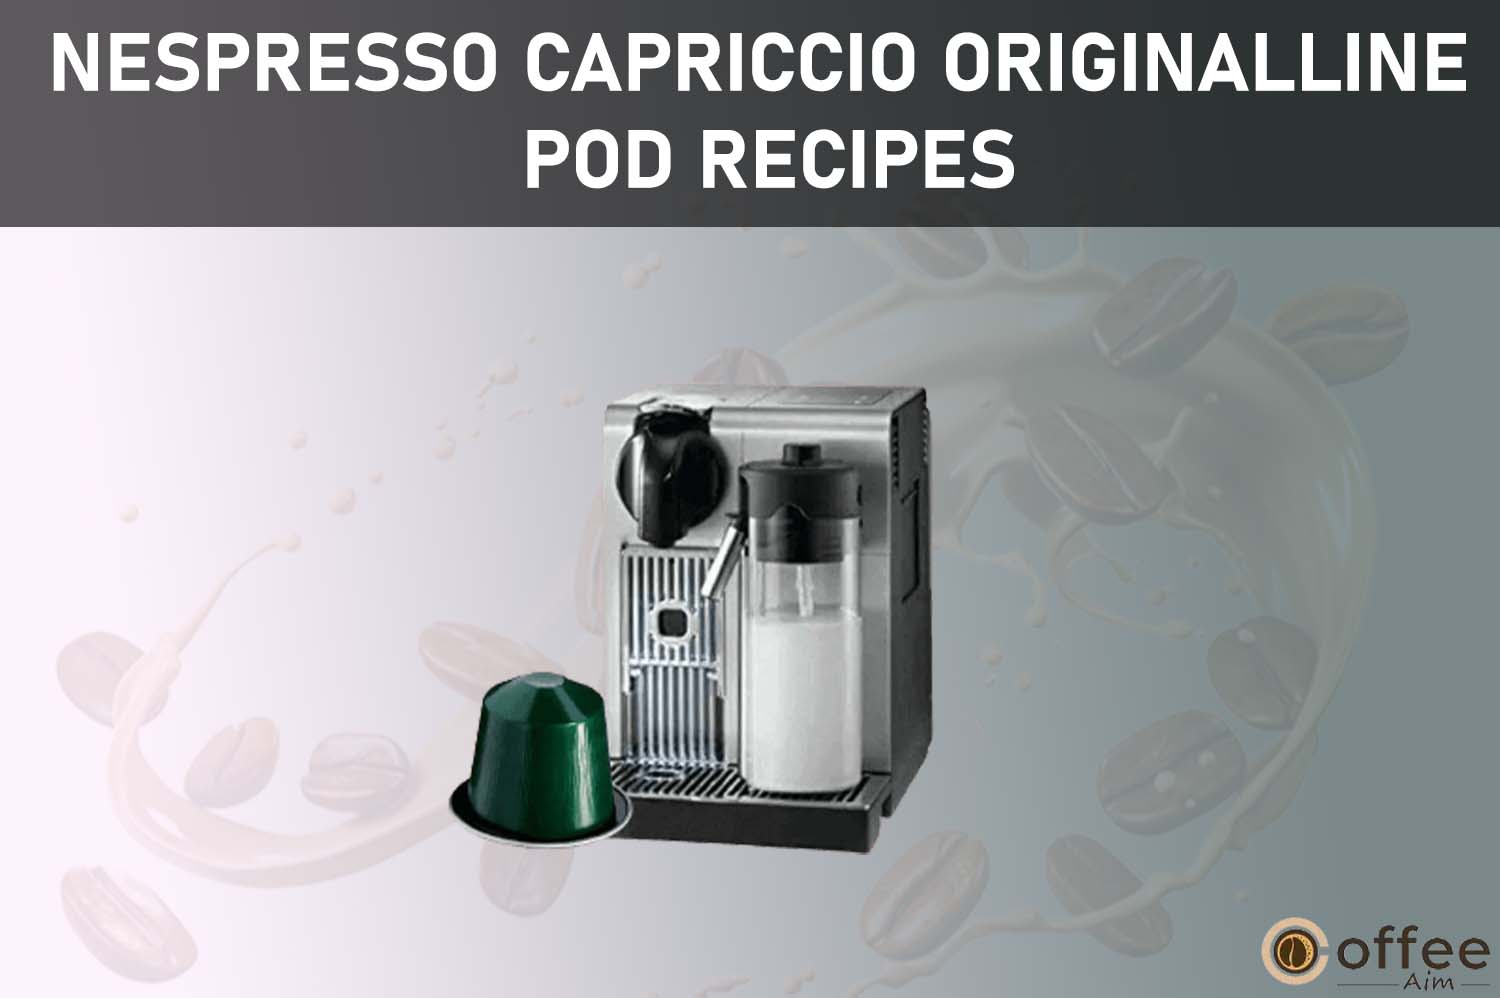 Featured image for the article "Nespresso Capriccio OriginalLine Pod Recipes"